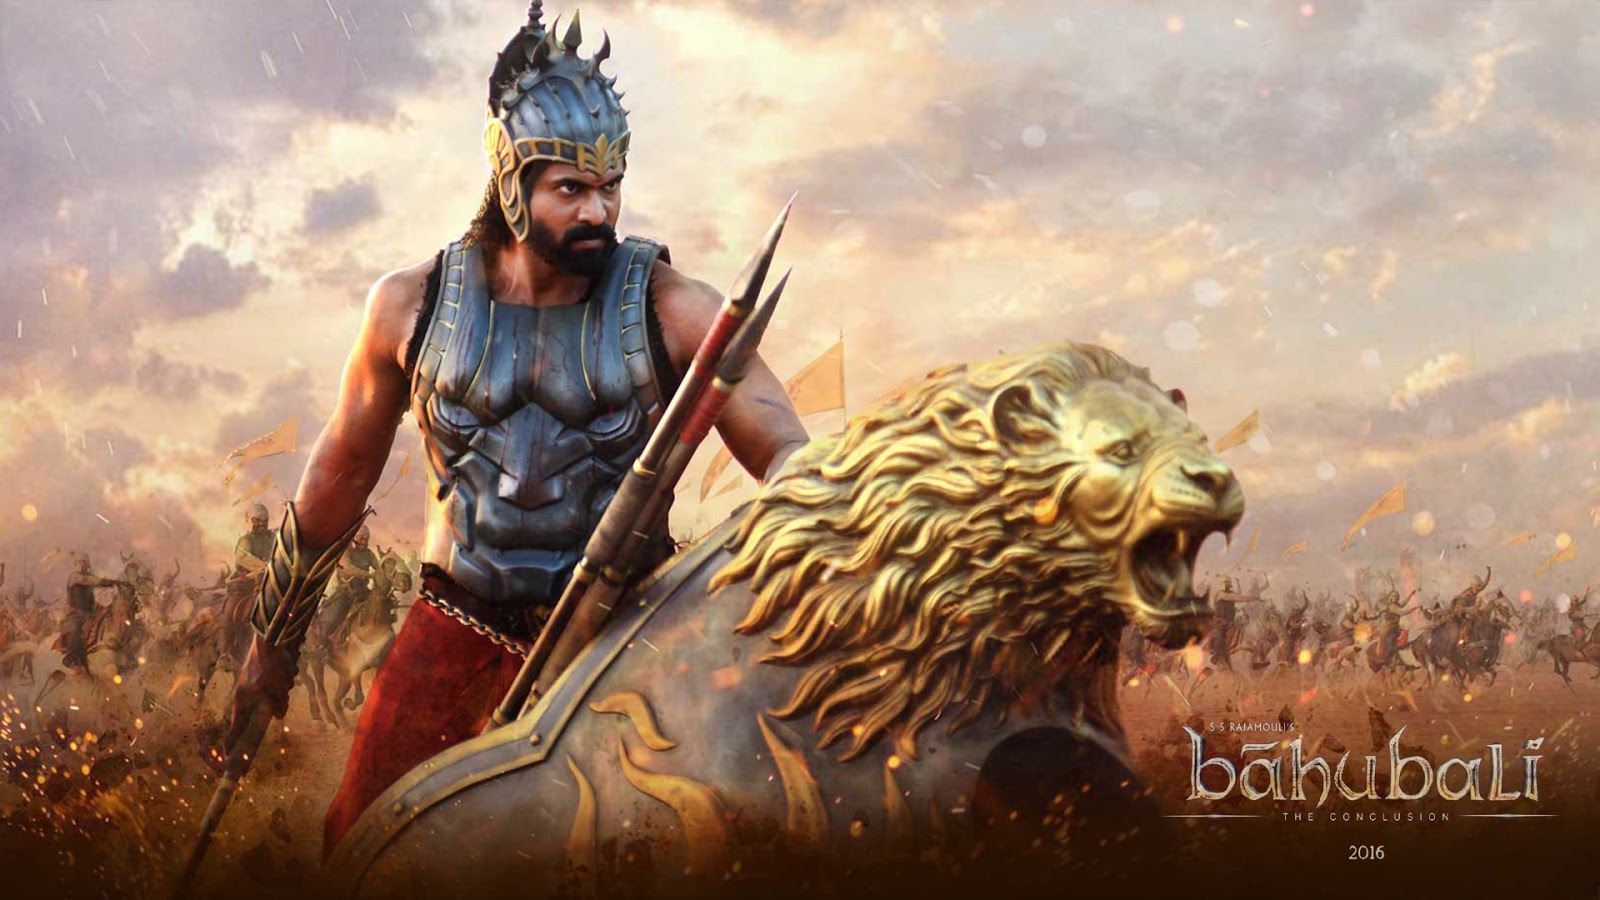 bahubali 2 wallpaper,mythologie,cg kunstwerk,massively multiplayer online rollenspiel,erfundener charakter,film